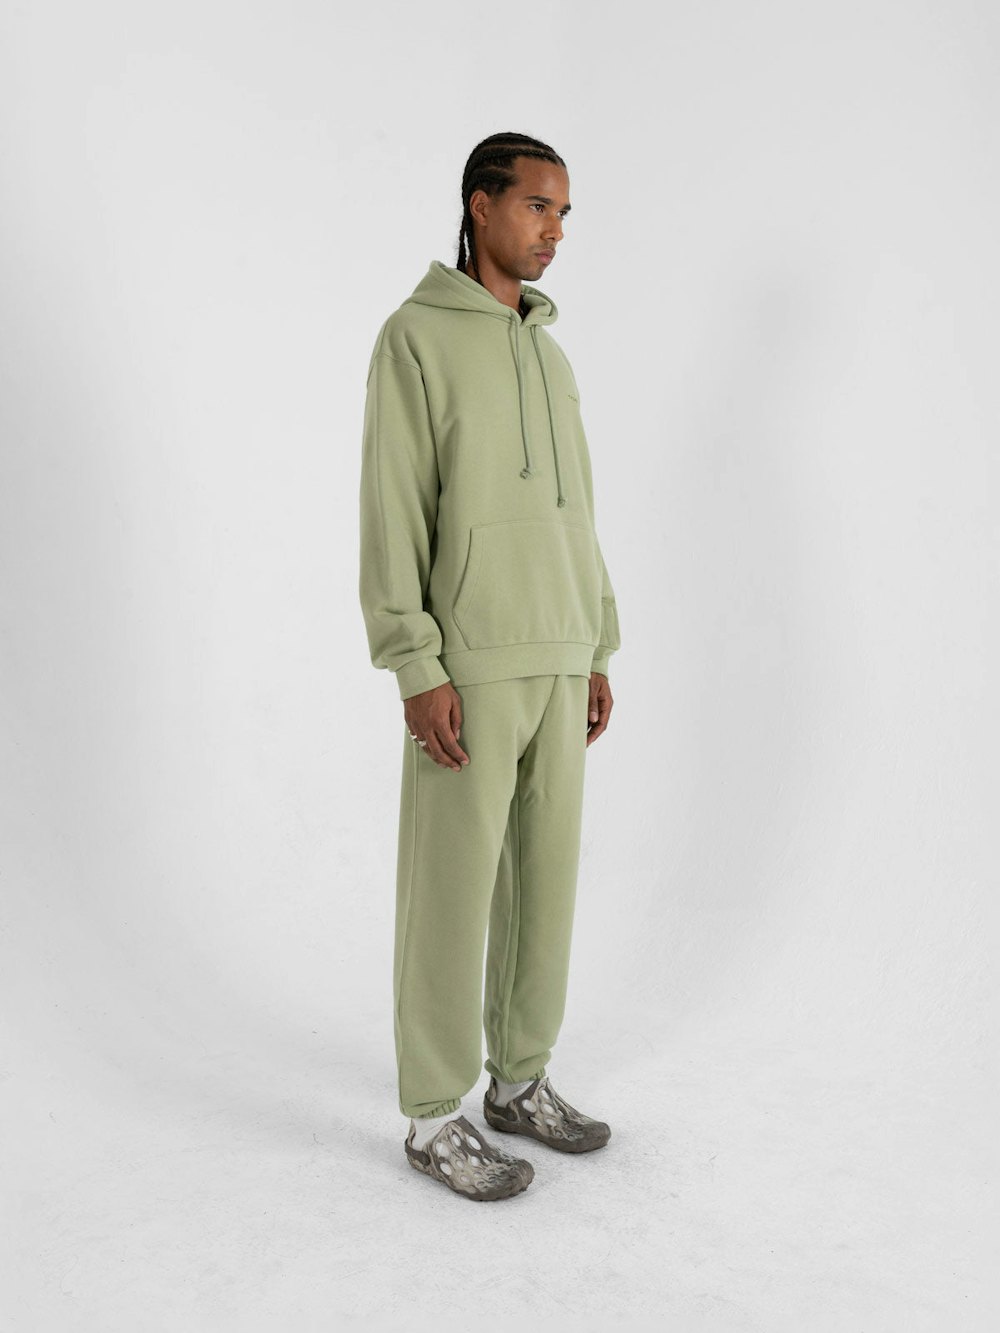 Matcha Green Uniform Sweatpant